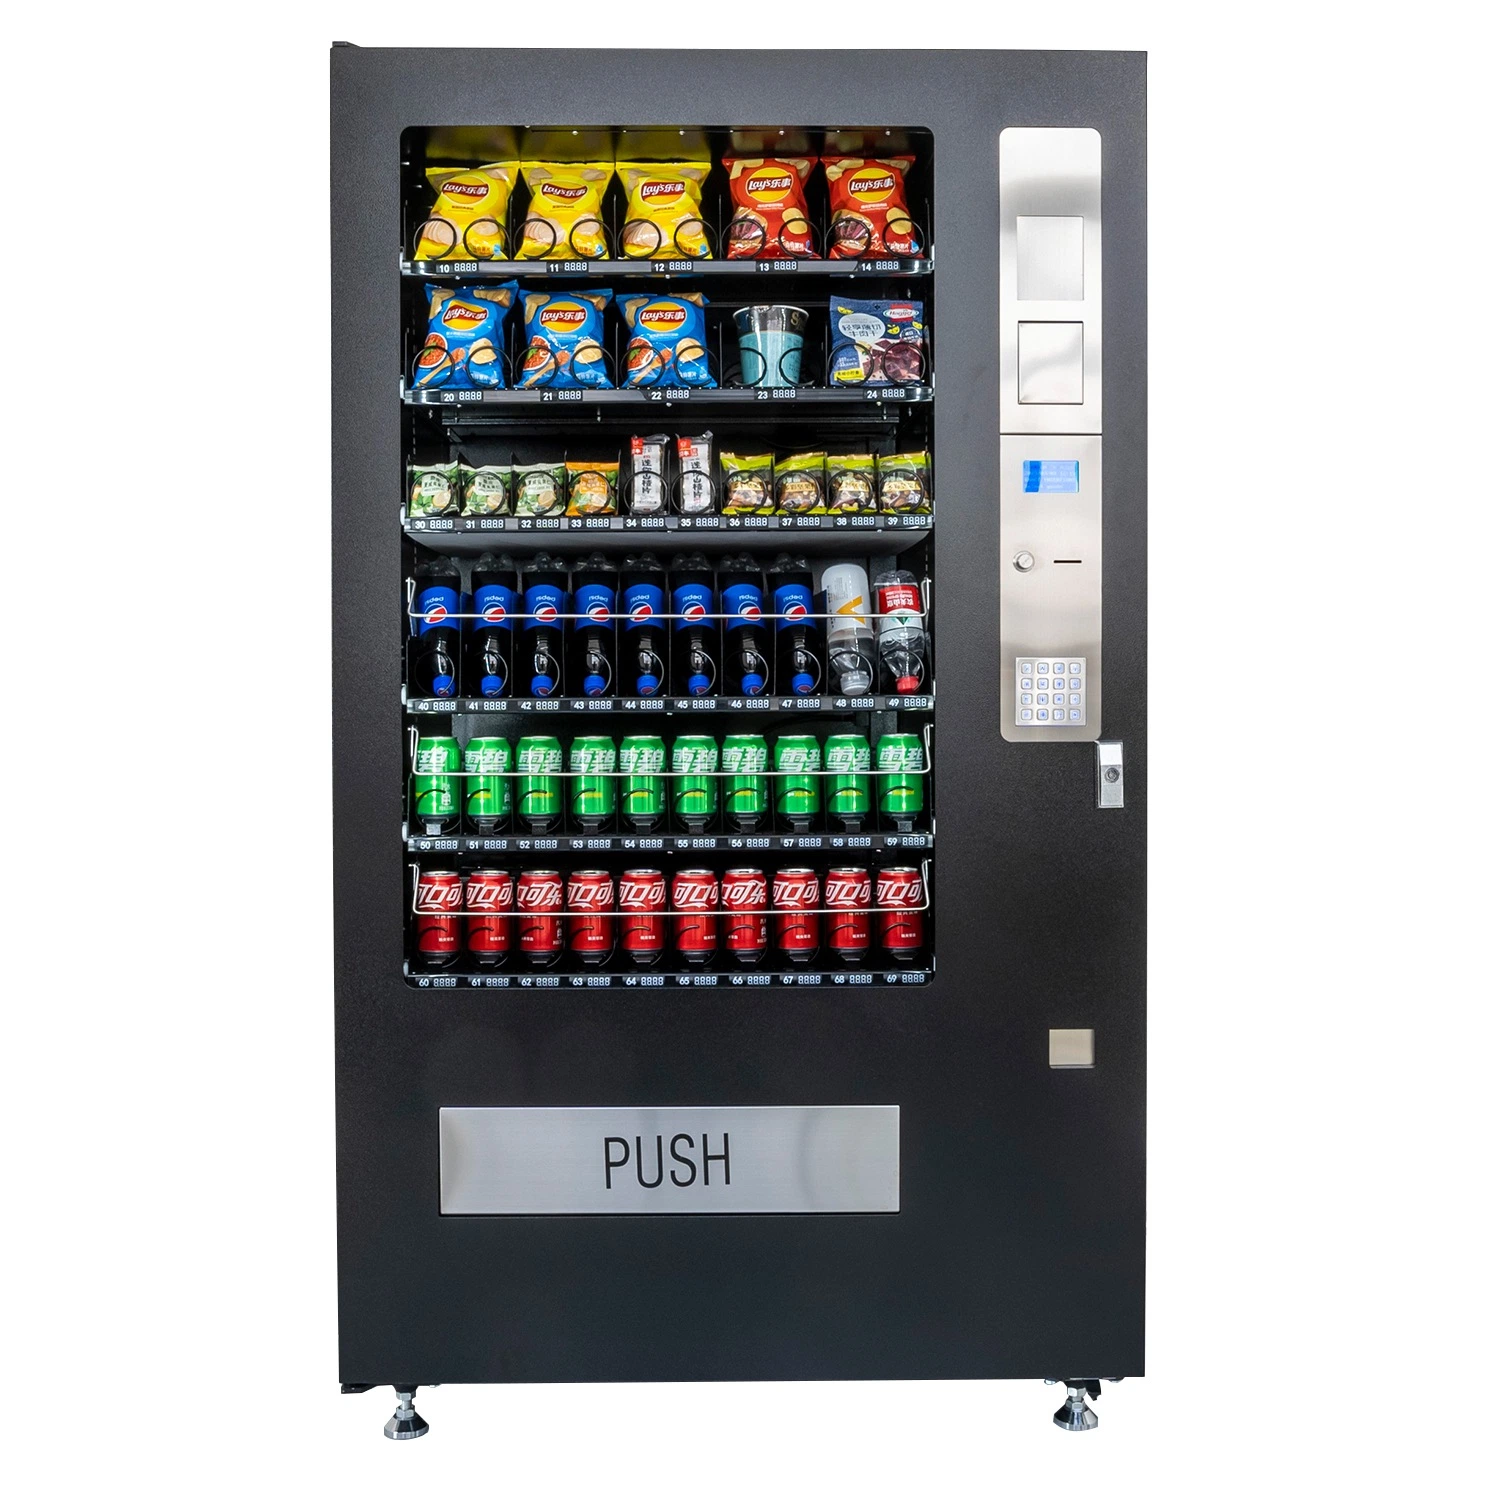 Máquina expendedora de snacks y bebidas con 50 selecciones